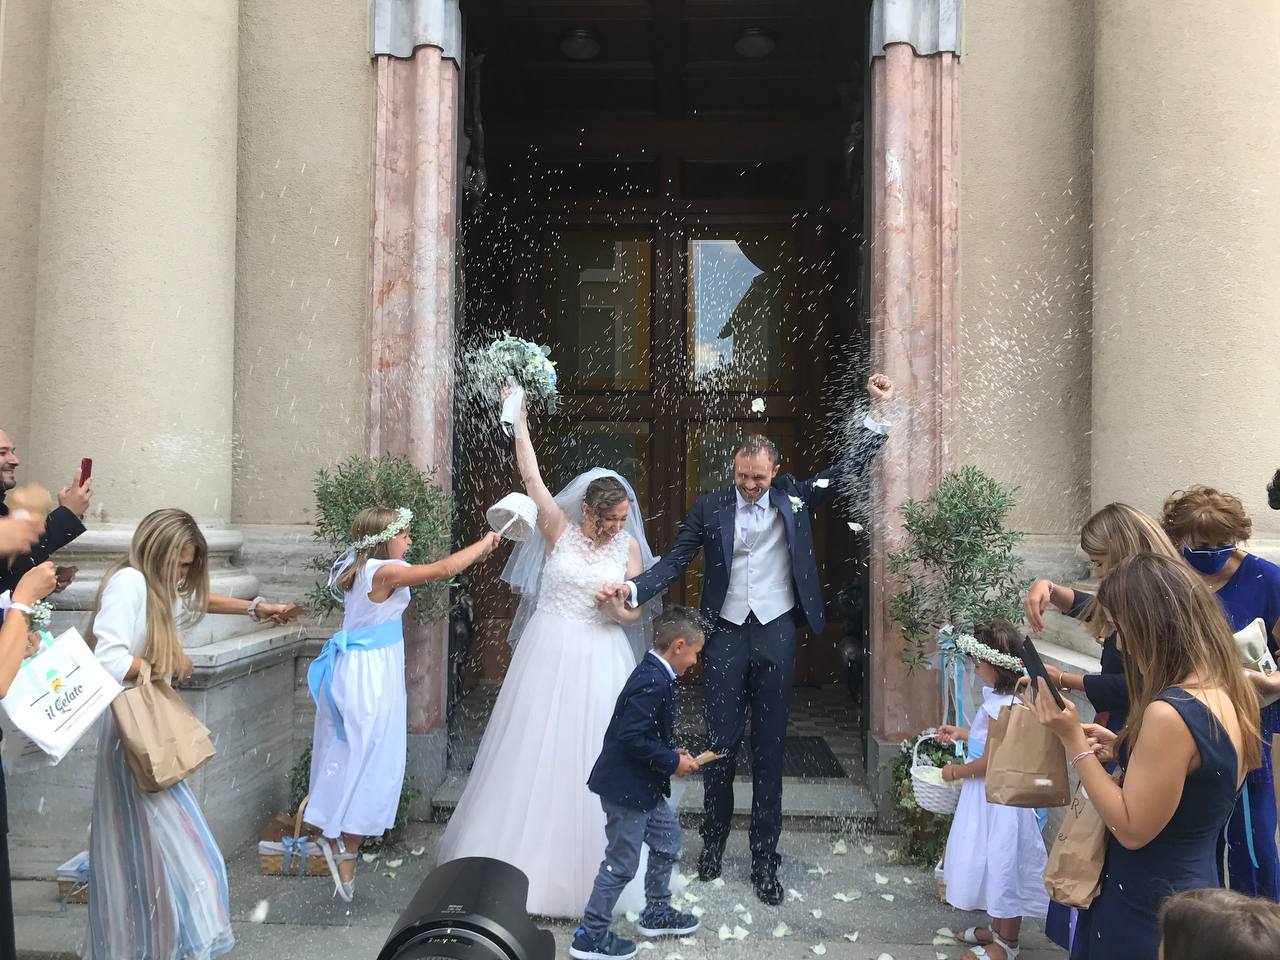 Dall’annuncio su Radio Deejay alle nozze: Gervasini e Guidobono oggi sposi